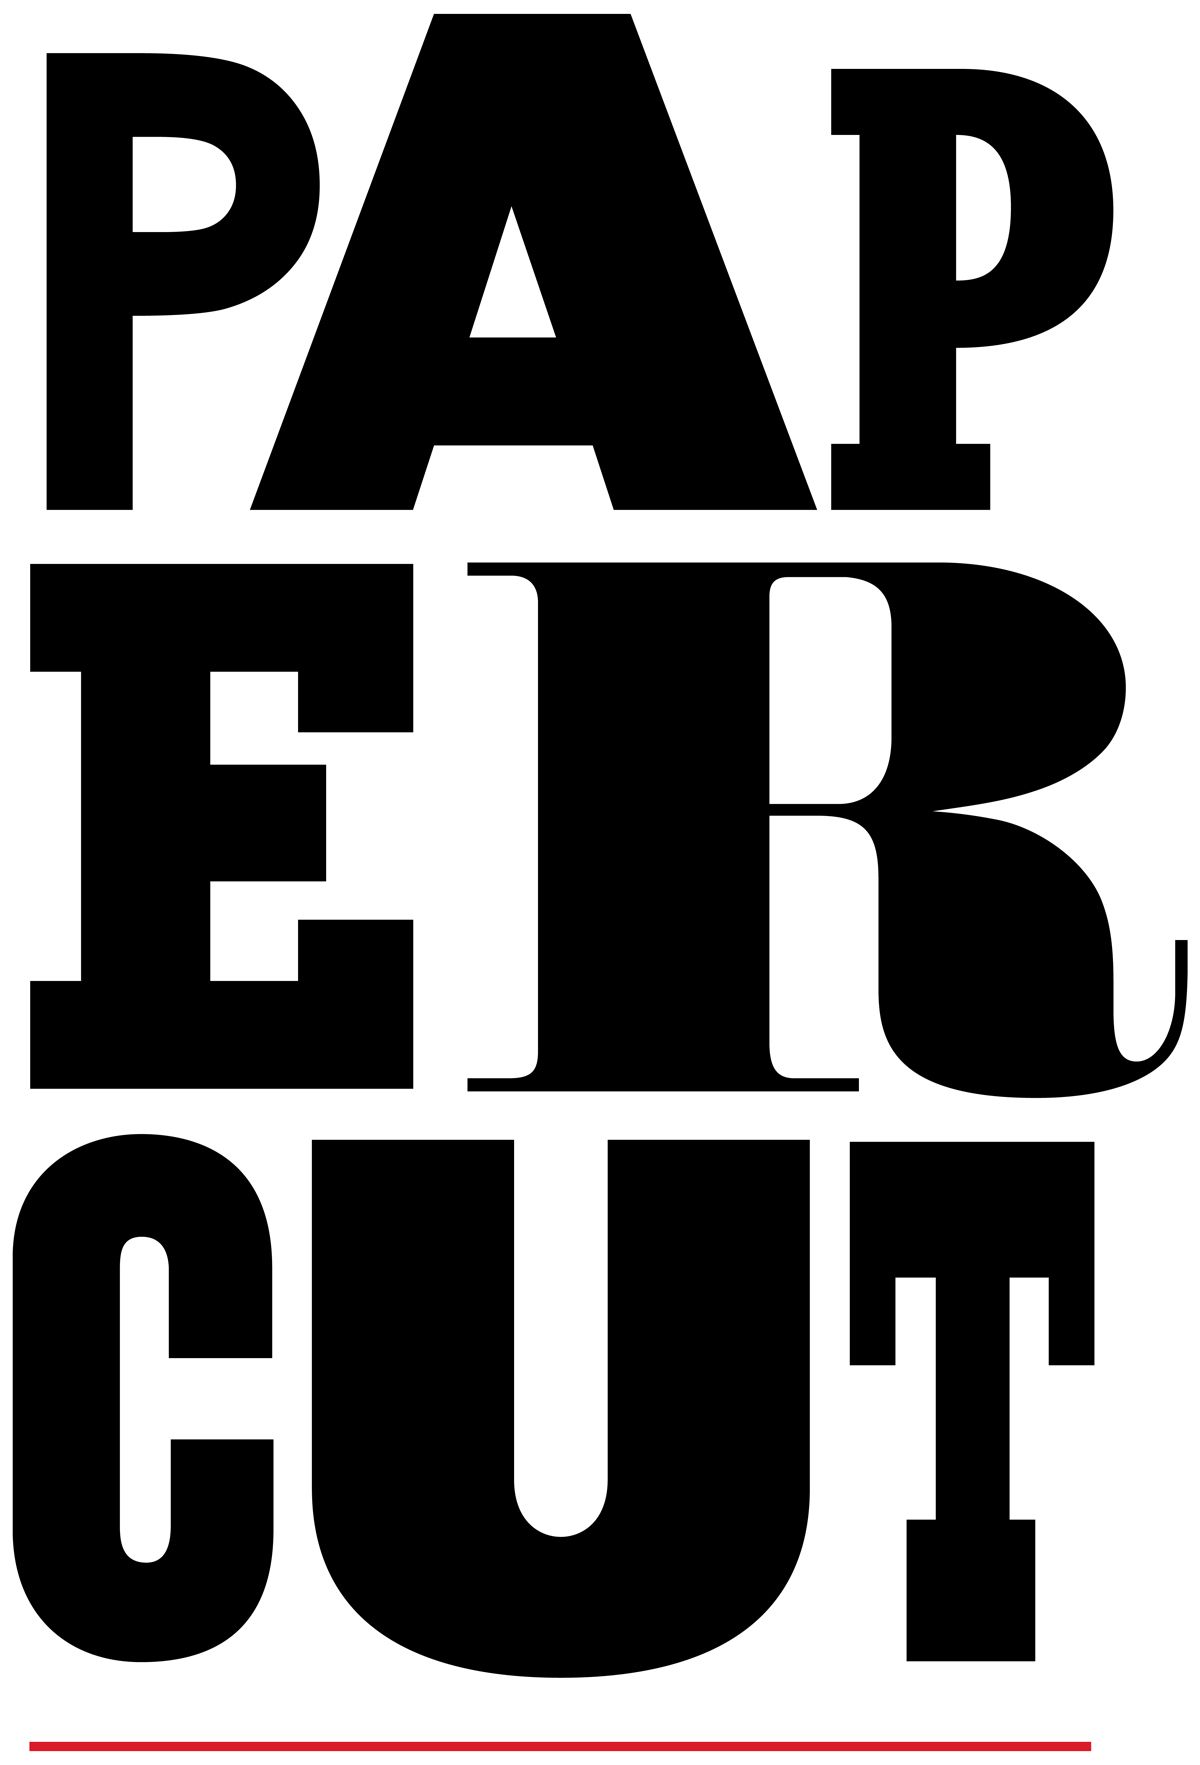 Papercut